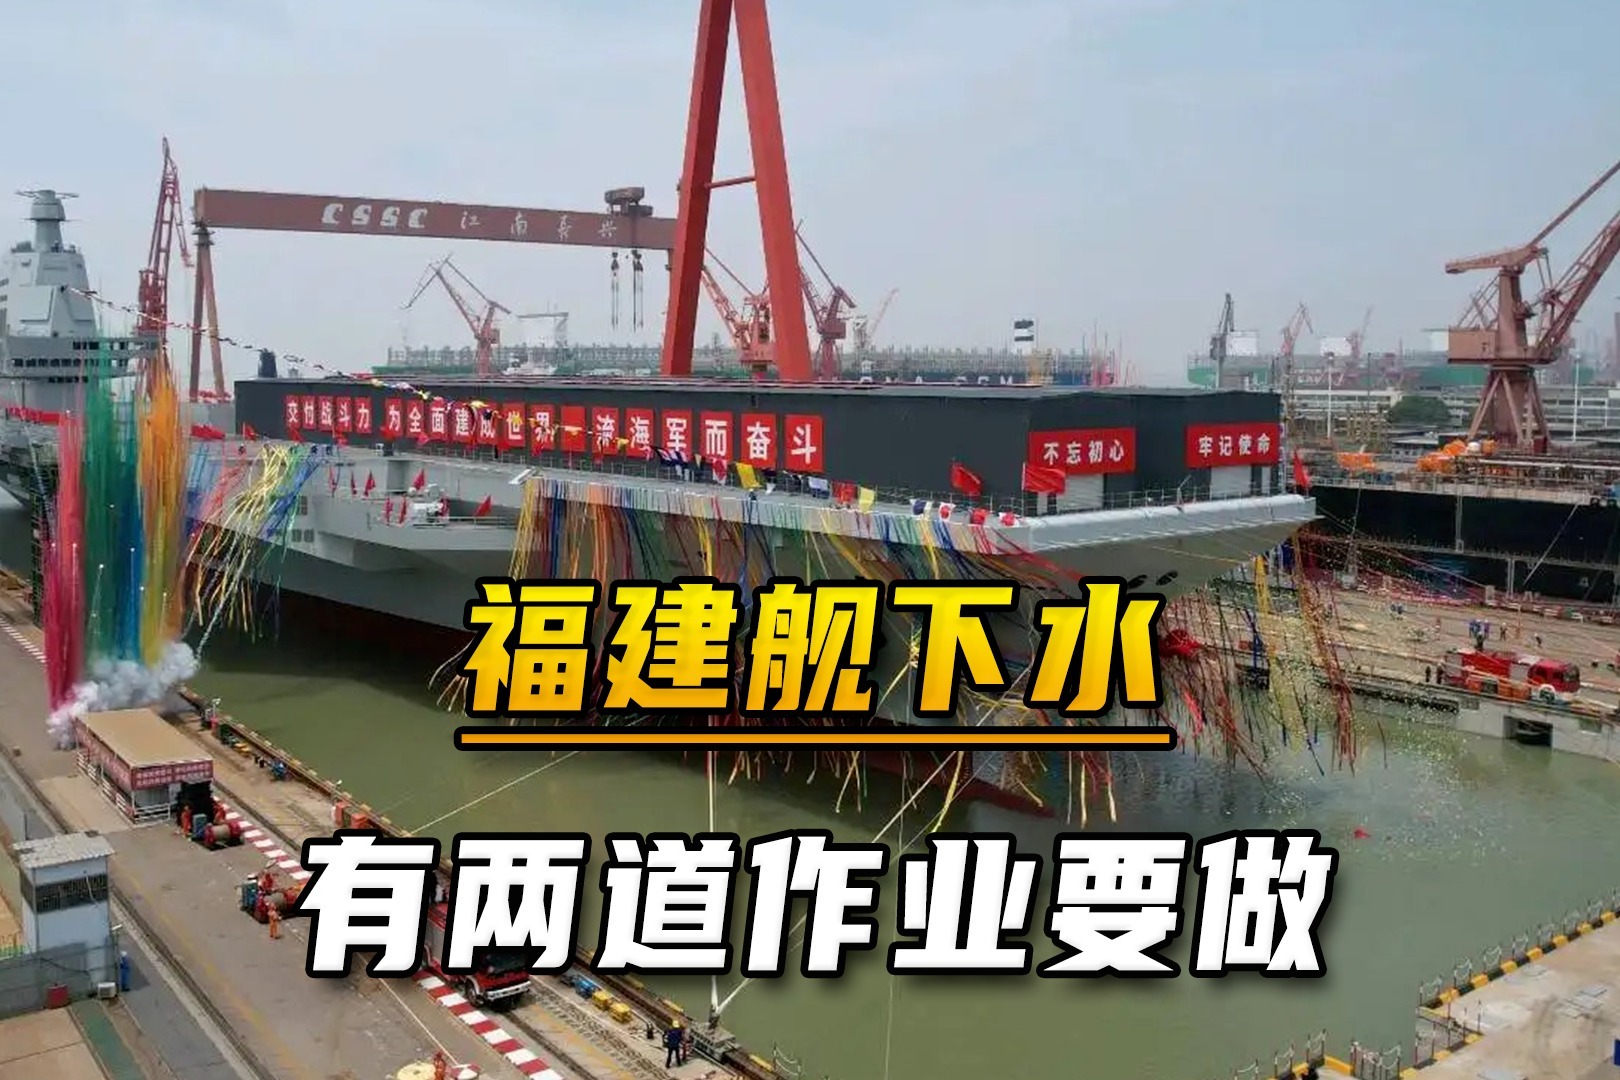 【视频】→第三艘航空母舰——福建舰 -6park.com